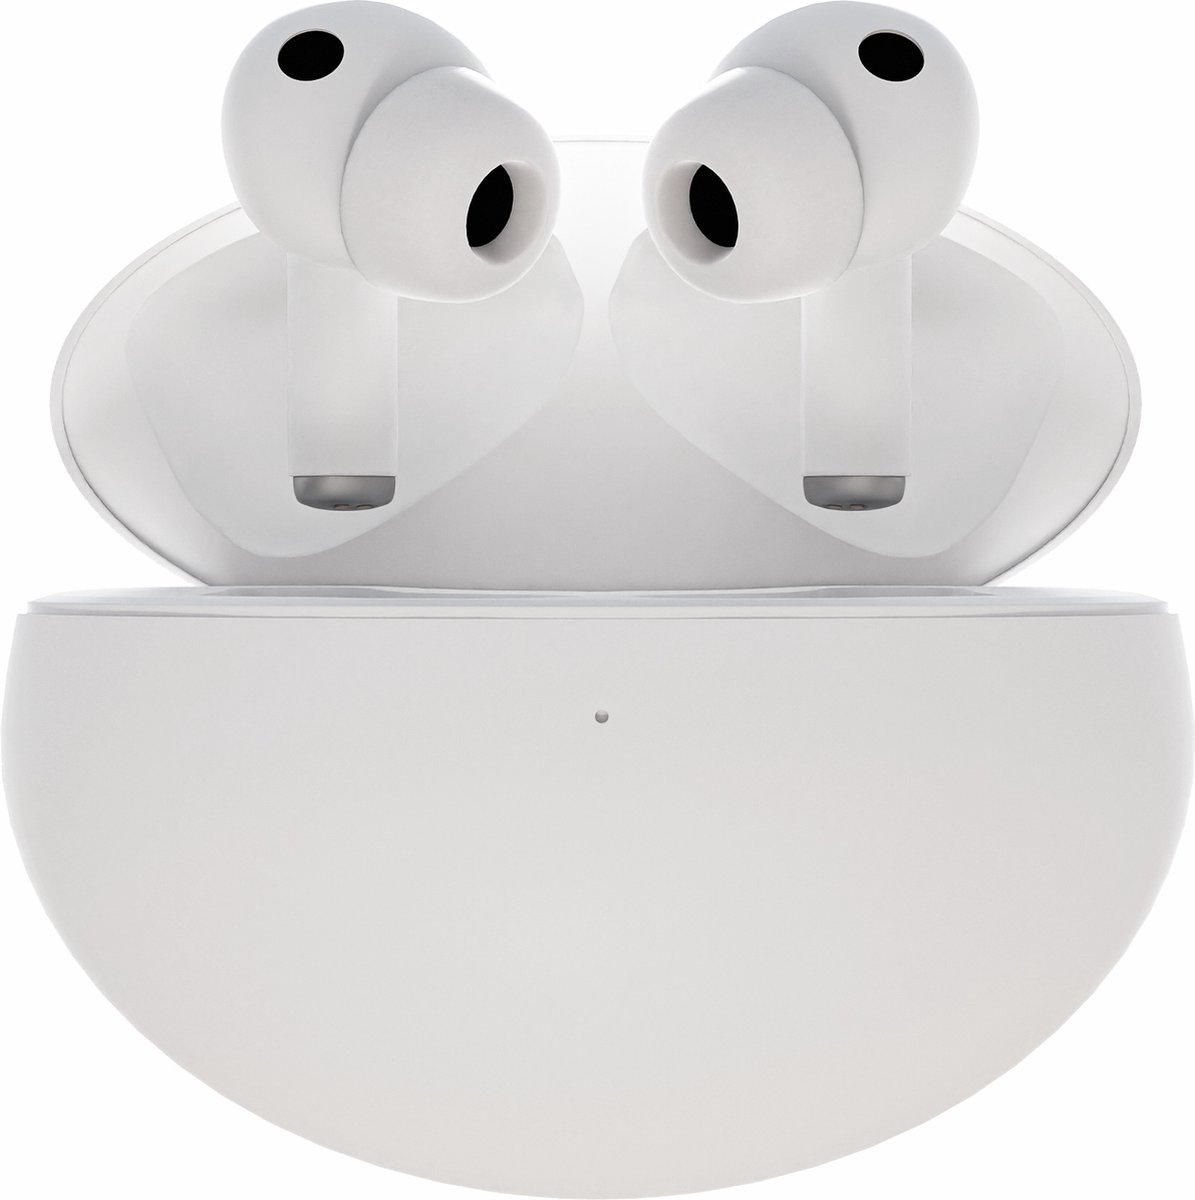 Audrax Studio - Volledig Draadloze Oordopjes | Bluetooth | Oortjes Draadloos | In-Ear | Earpods | Geschikt voor Apple & Android | Geavanceerde Active Noise Cancelling | Transparency Mode | 3 Luistermodi | Zuivere bas | Ergonomisch | Wit